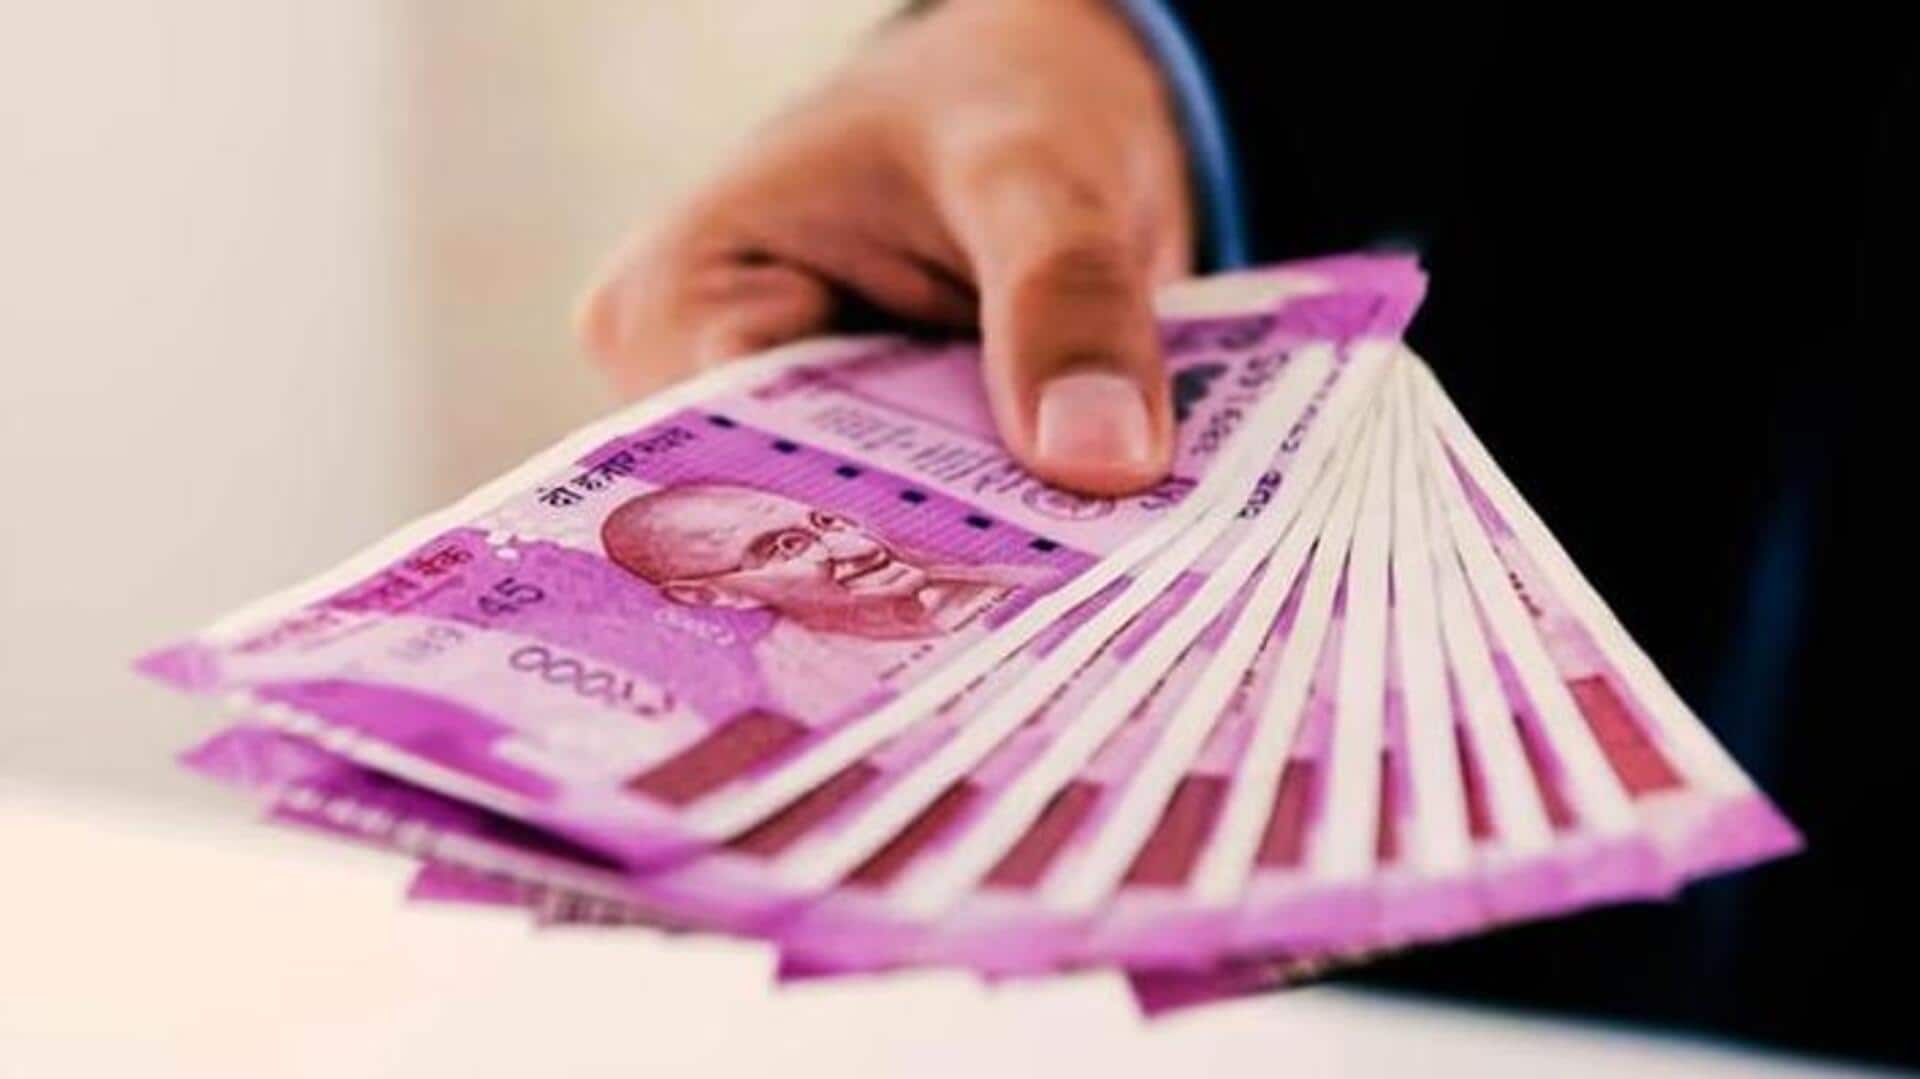 2,000 रुपये के नोटों की वापसी जारी, जनता के पास घटी 83,242 करोड़ रुपये की नकदी